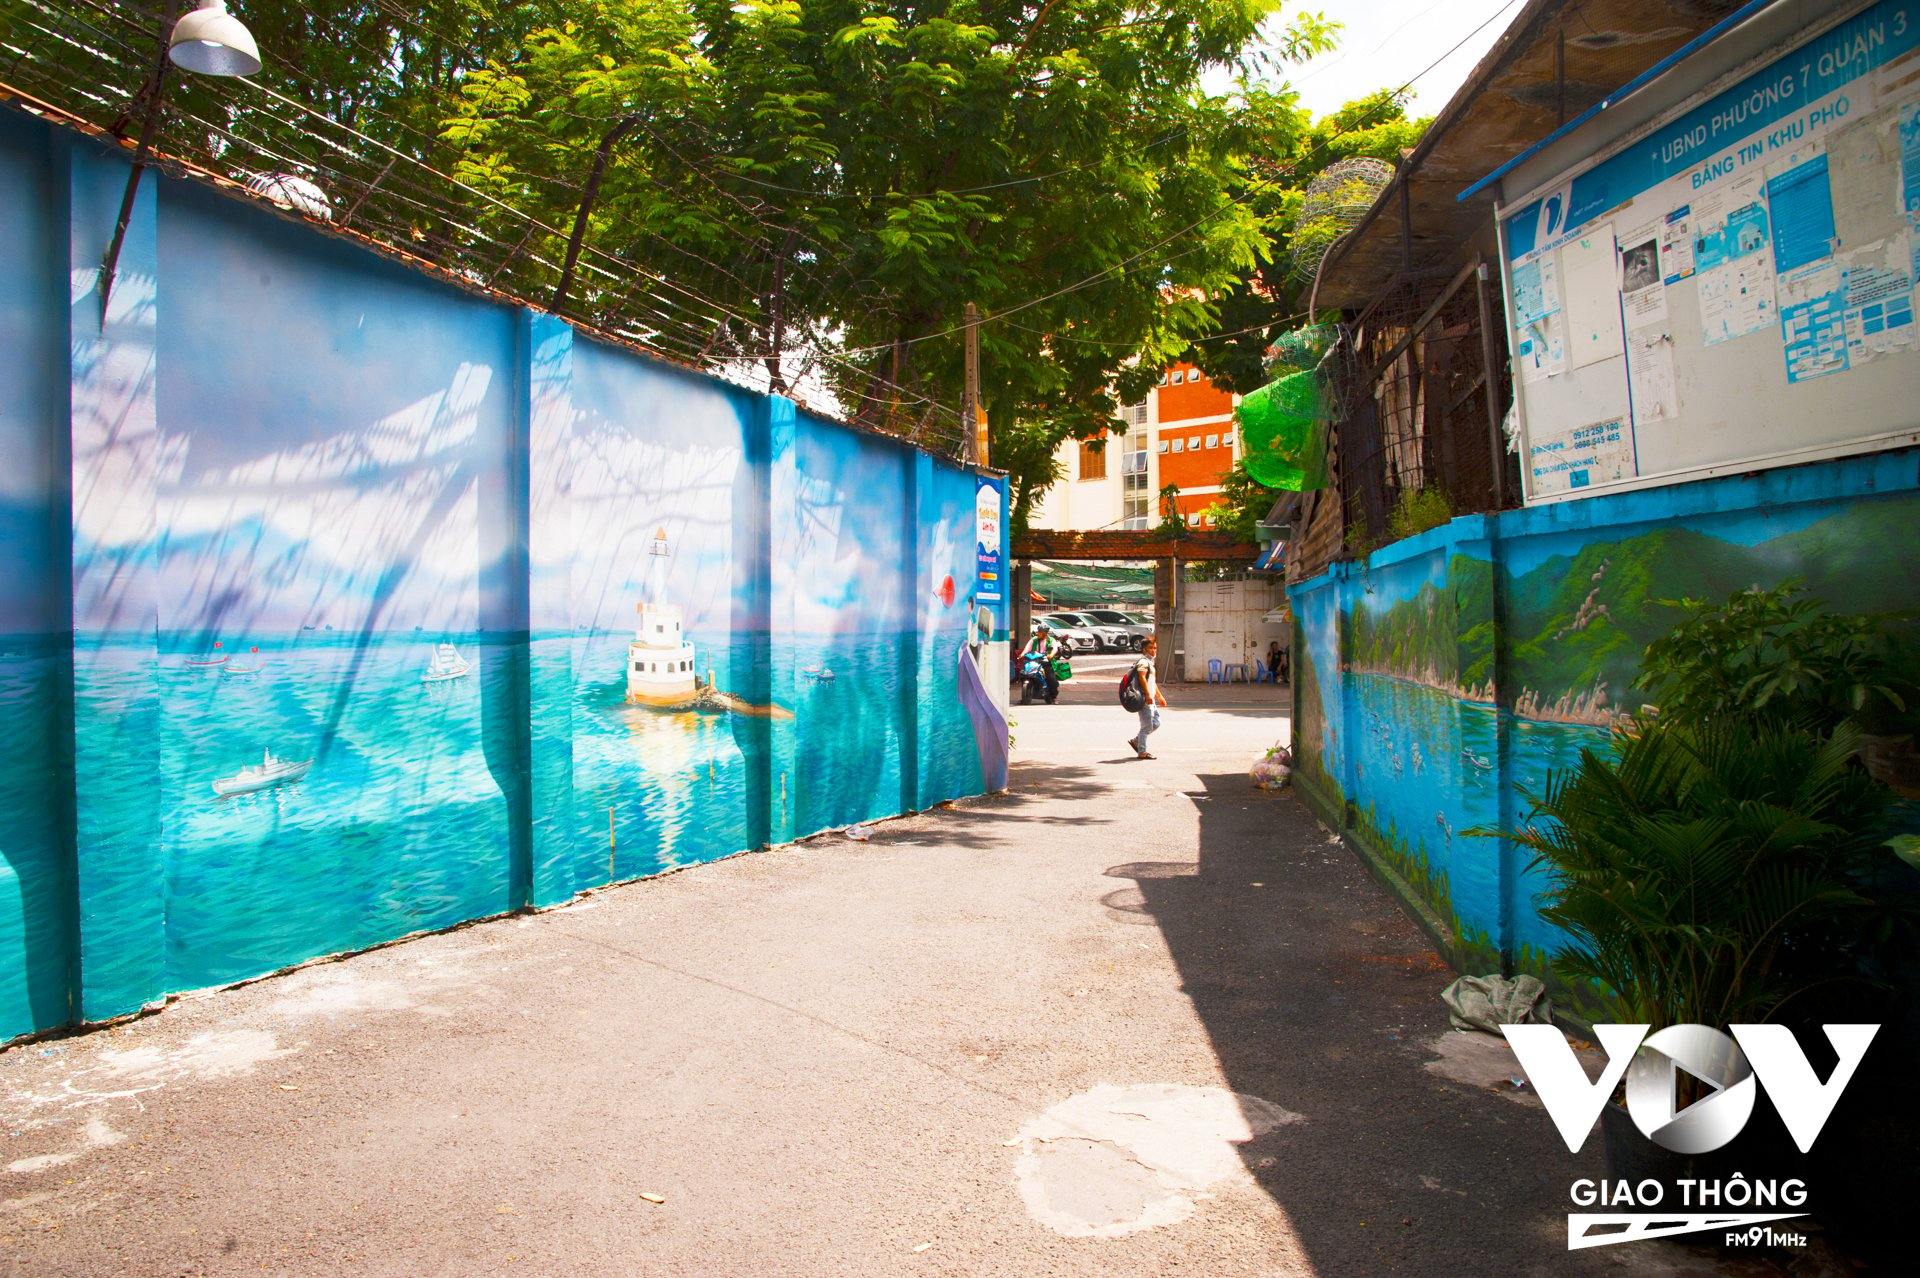 Ngoài gần 200m ở đường Nguyễn Hữu Cảnh, công trình còn thực hiện ở tuyến hẻm 115 đường Trần Quốc Thảo (Quận 3) với những bức bích họa về thiên nhiên, biển - đảo, quê hương đất nước…